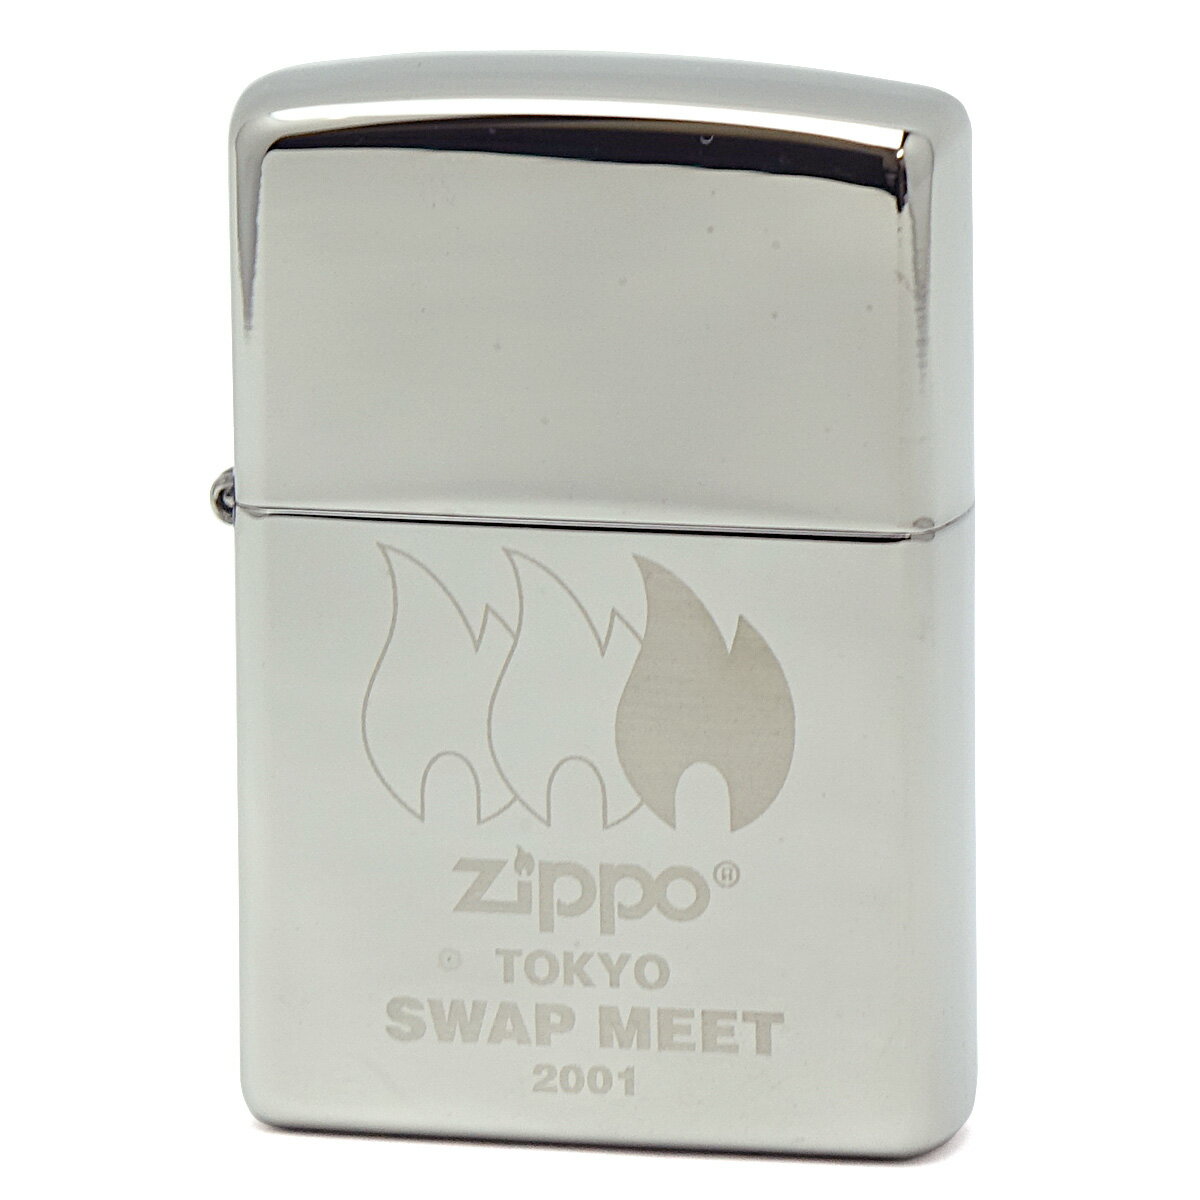 Zippoの祭典SWAP MEETの開催を記念して作られた限定品です。 商品番号 wzip-k-azk-smtk01l 加工表面処理 レーザー彫刻 サイズ （約）H5.6cm×W3.8cm×D1.3cm 付属品 専用BOX、取り扱い説明書兼永久保証書 ご注意 ※本商品は、新品・未使用品でございますが、製造年度からの流通品となりますため、キズ等見受けられる場合がございます。キズ等を気になさる方はご購入をご遠慮ください。 ※ZIPPOの内部（ケースの内側）が黒ずんでいる場合がございまが、これはヒンジ部分の溶接やメタル貼りを施した際に生じる加工の跡です。 ご理解の上、お買い求めくださいますようお願い致します。 ※zippo商品は、新品・未使用品のため、オイルは入っておりません。 ご一緒にお買い求めいただくことをお勧めいたします。 ギフト包装 ラッピング対応 消耗品(別売り) 純正オイル サイズ小（S） 133ml お得なウィック＆フリントセット！ ●激レアZippo一覧はこちら　　　●zippoライター一覧はこちら　　　●消耗品一覧はこちら